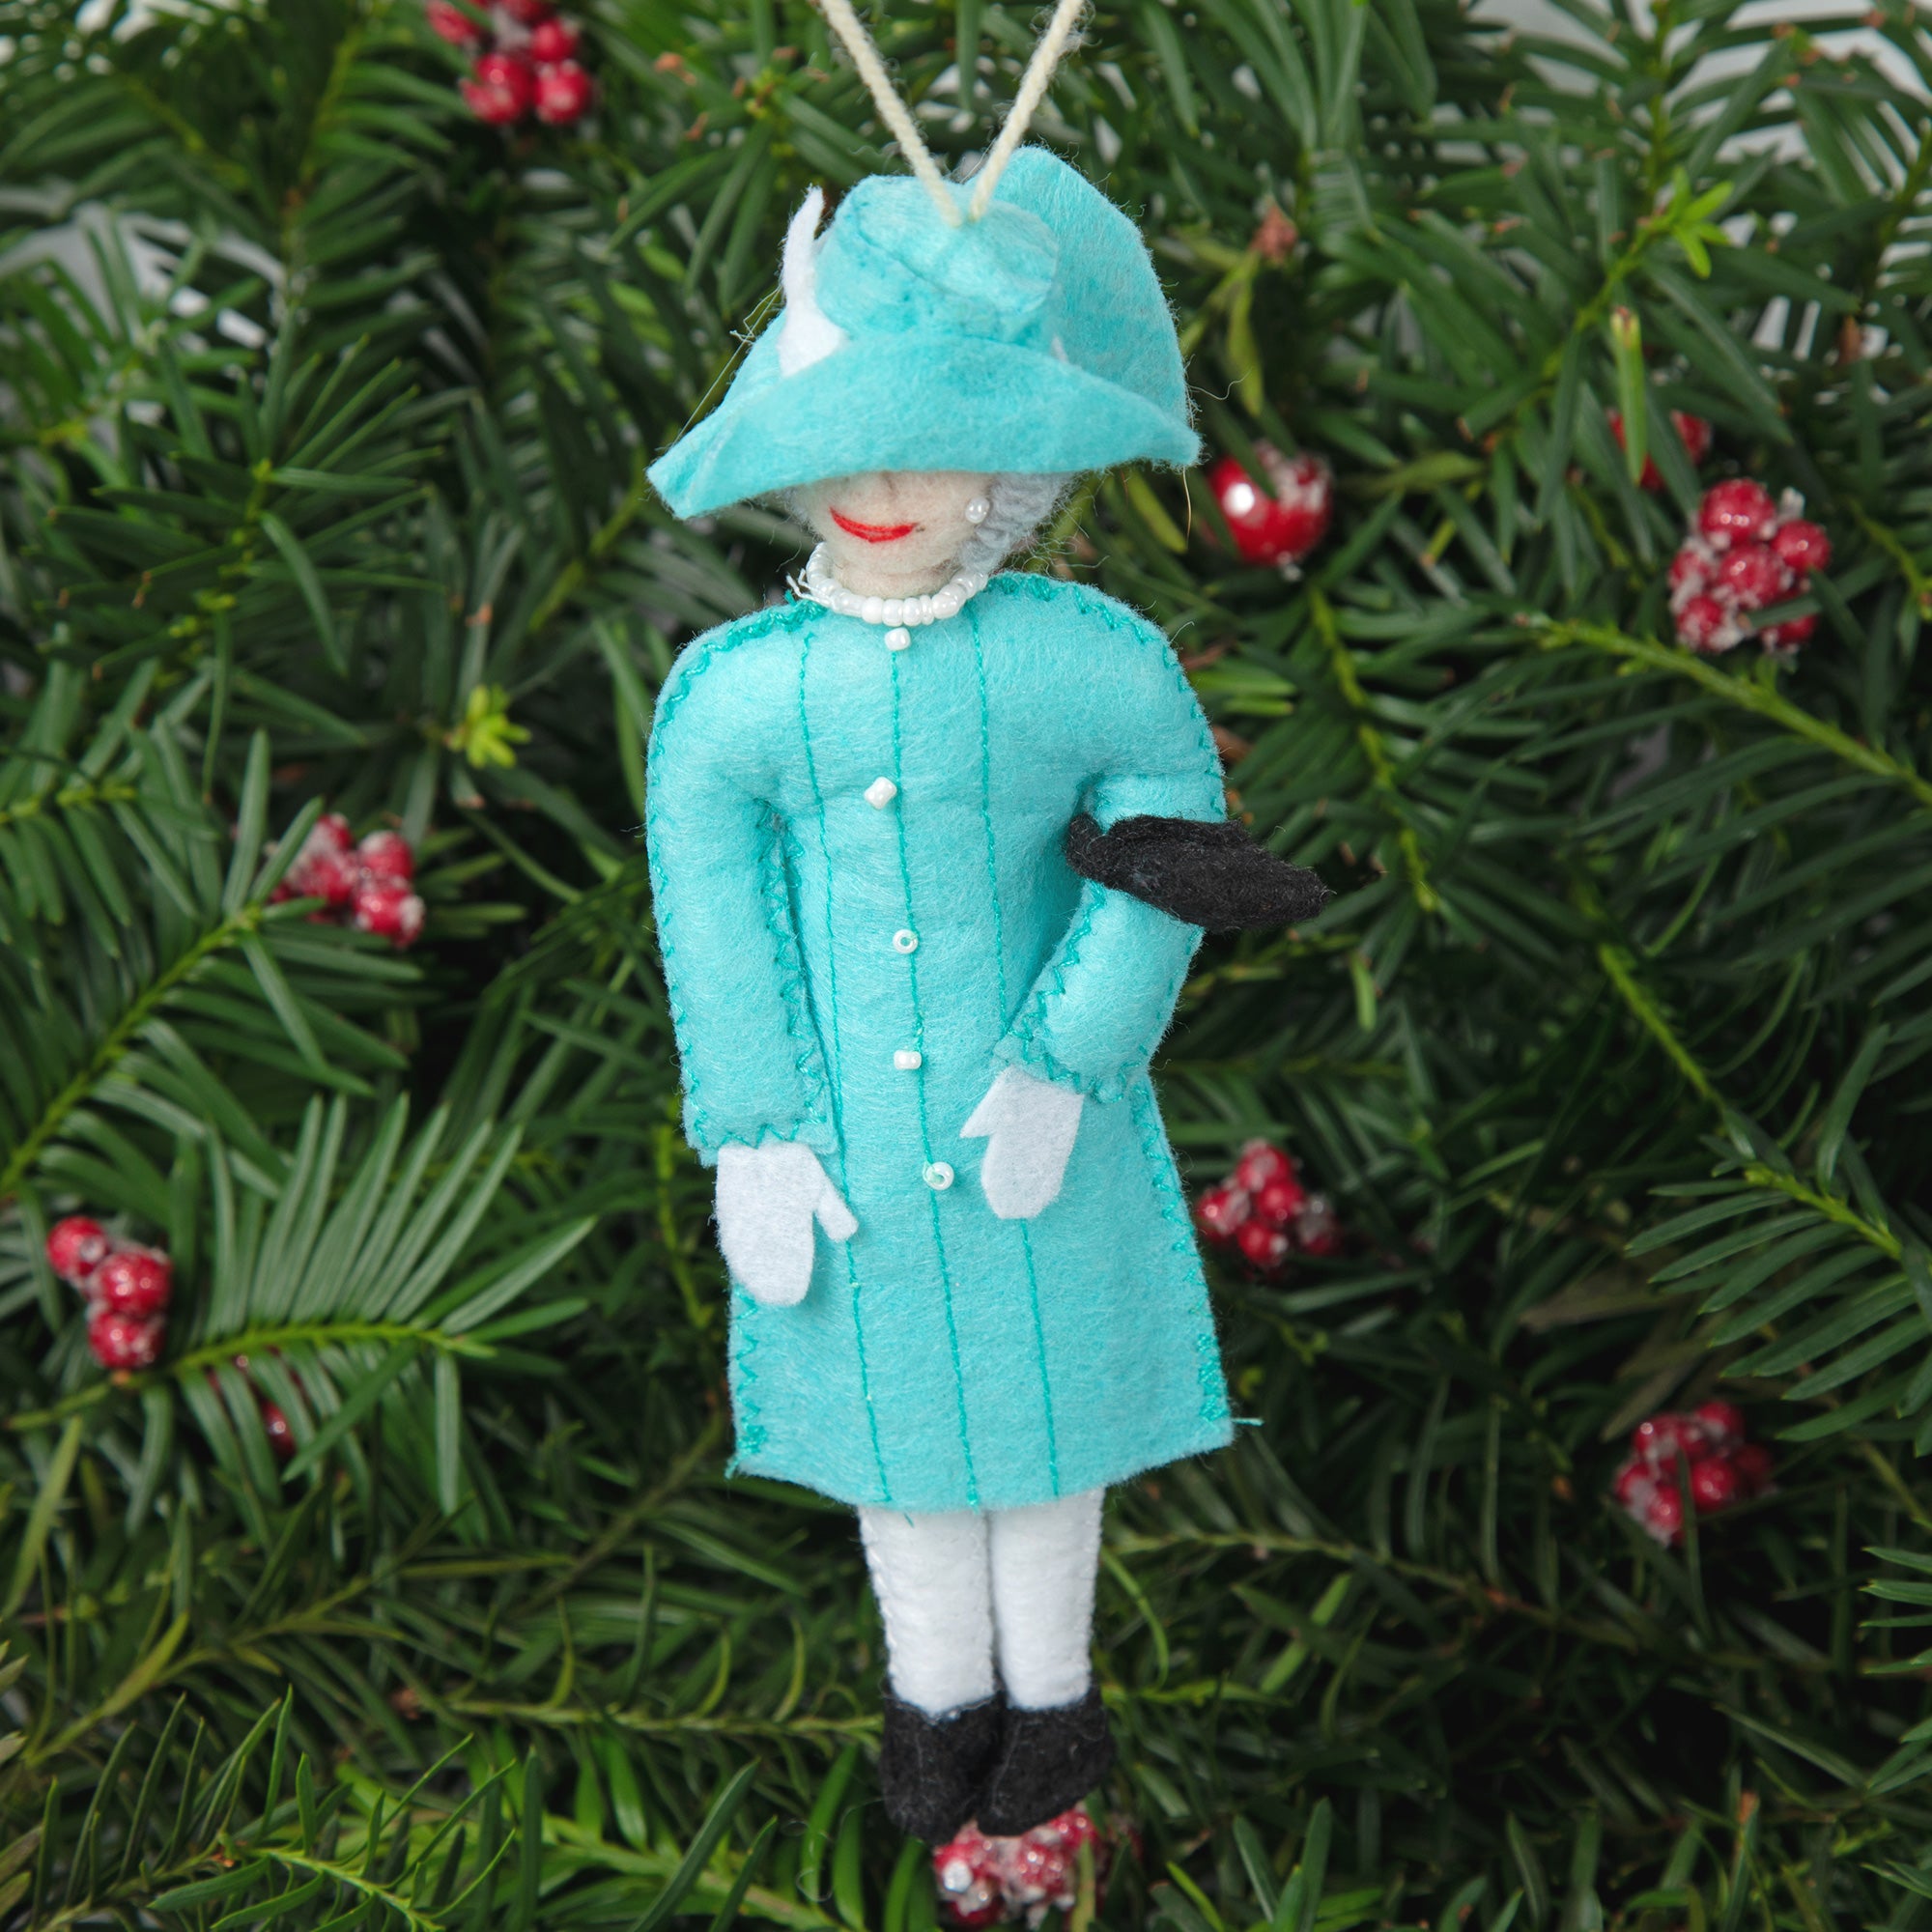 Handmade Figure Ornament - Queen Elizabeth